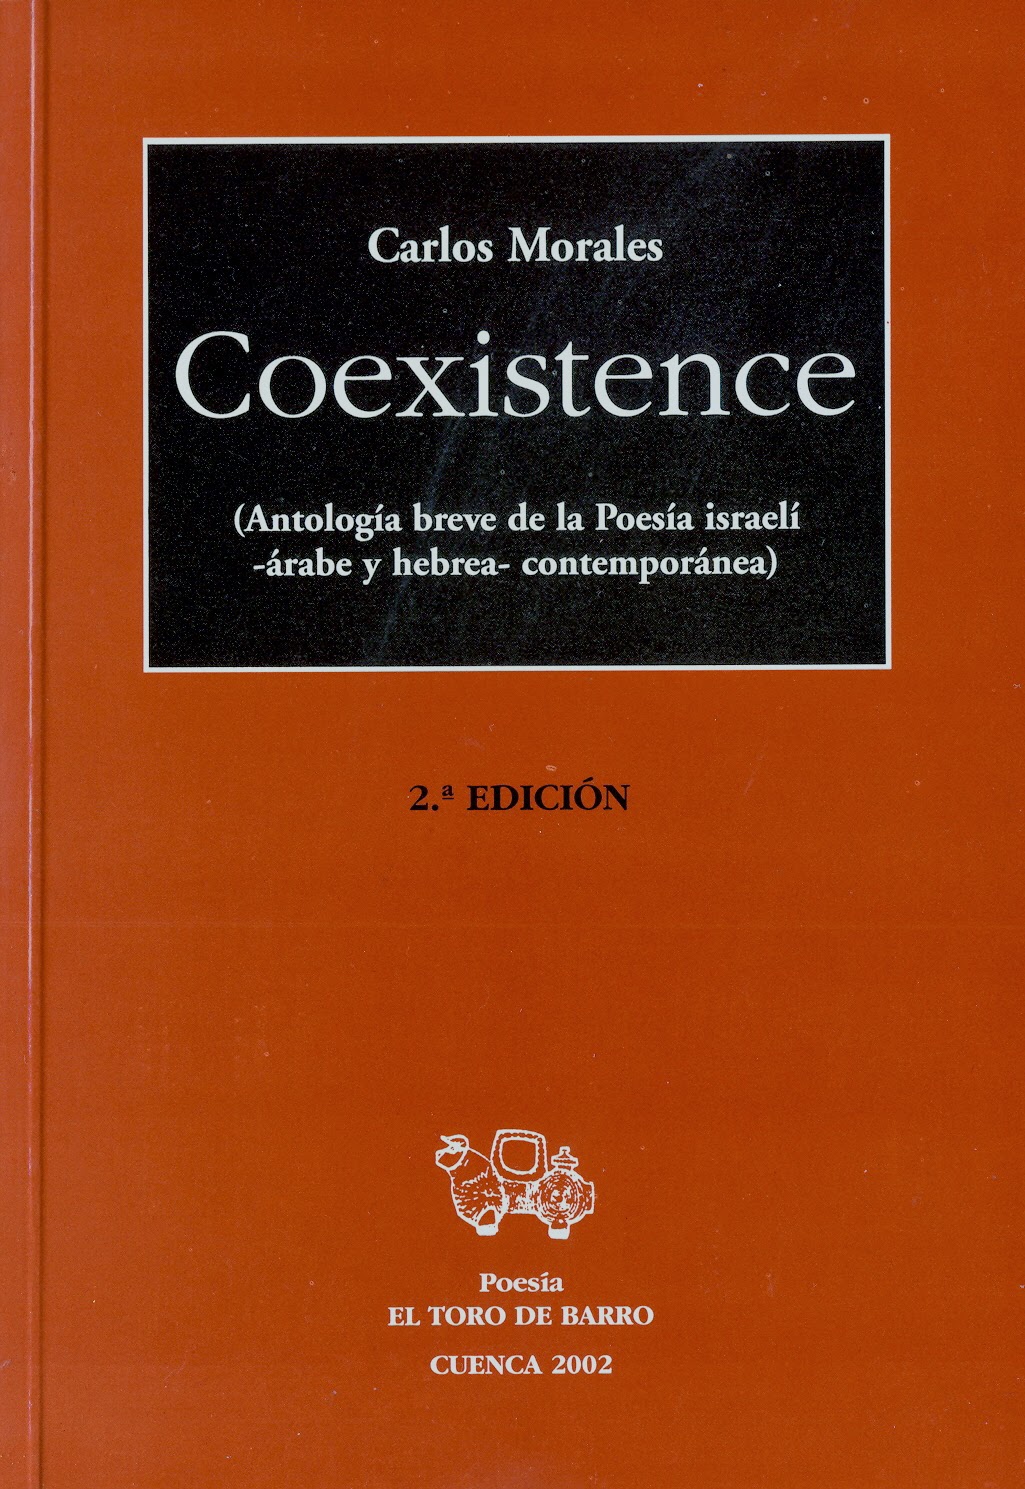 Carlos Morales, "Coexistencia (Antología de poesía israelí –árabe y hebrea– contemporánea”, Ed. El Toro de Barro, Carlos Morales ed.